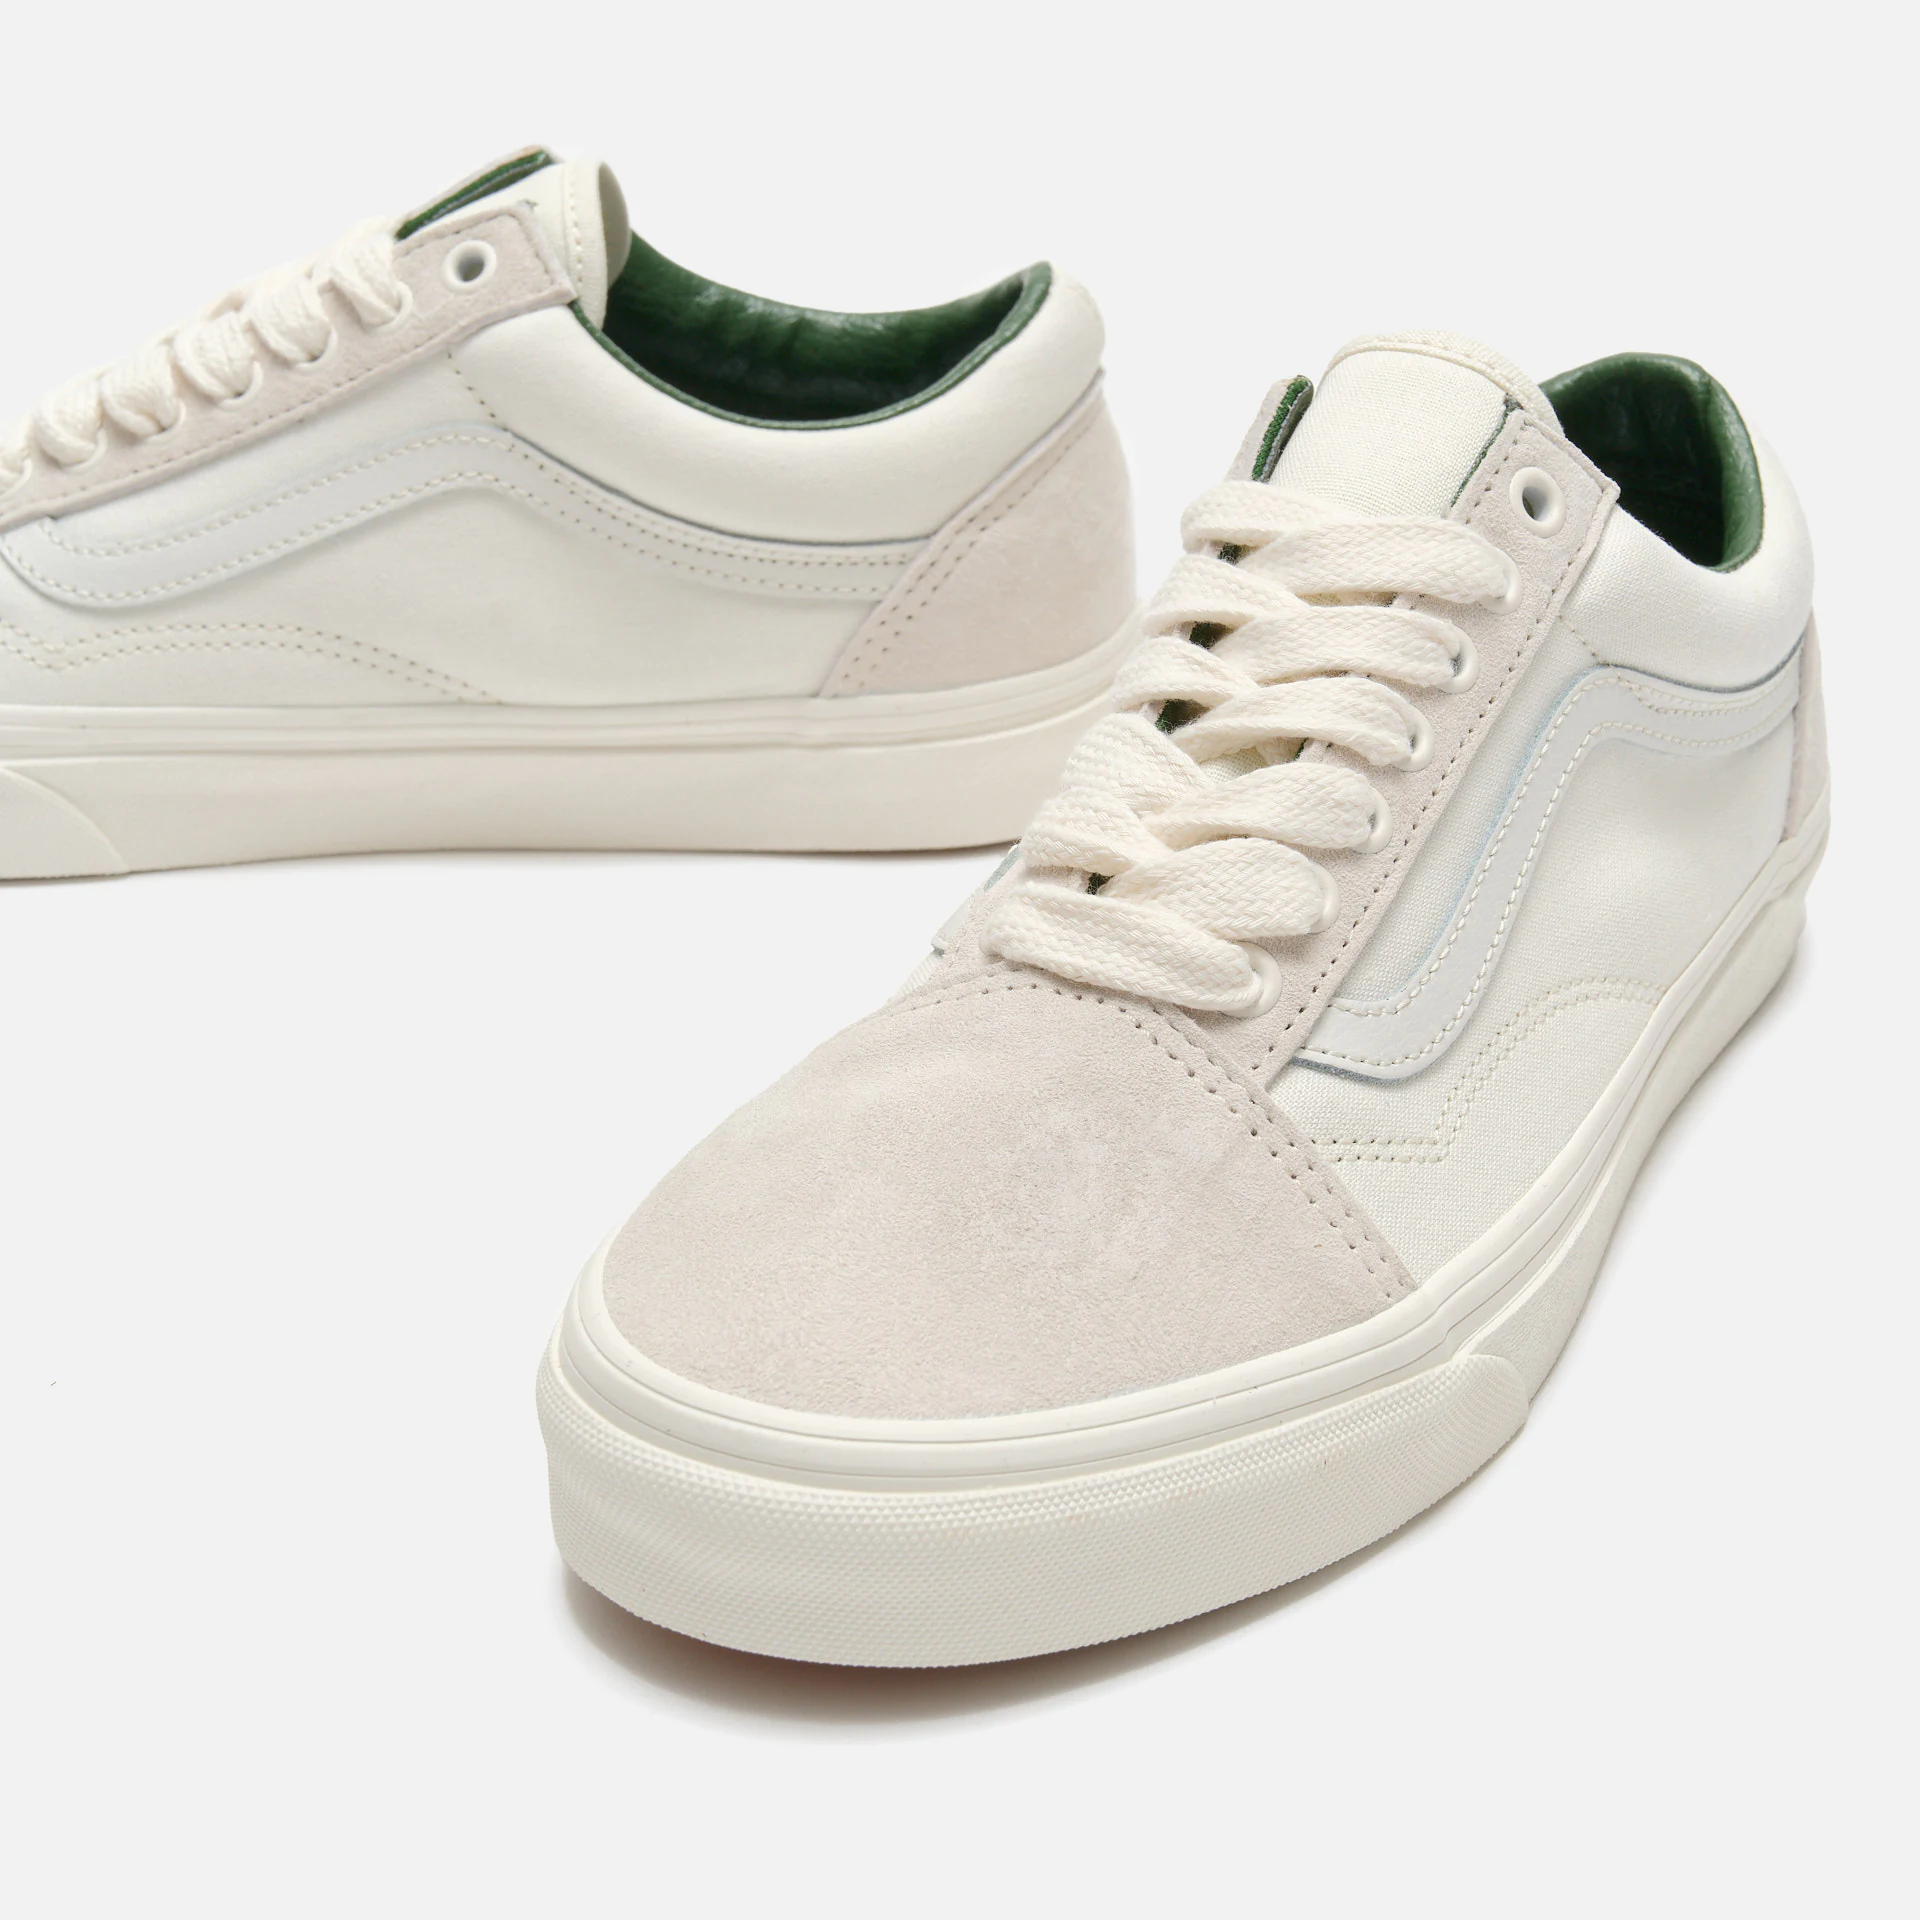 Vans Old Skool Sneakers White/Grey